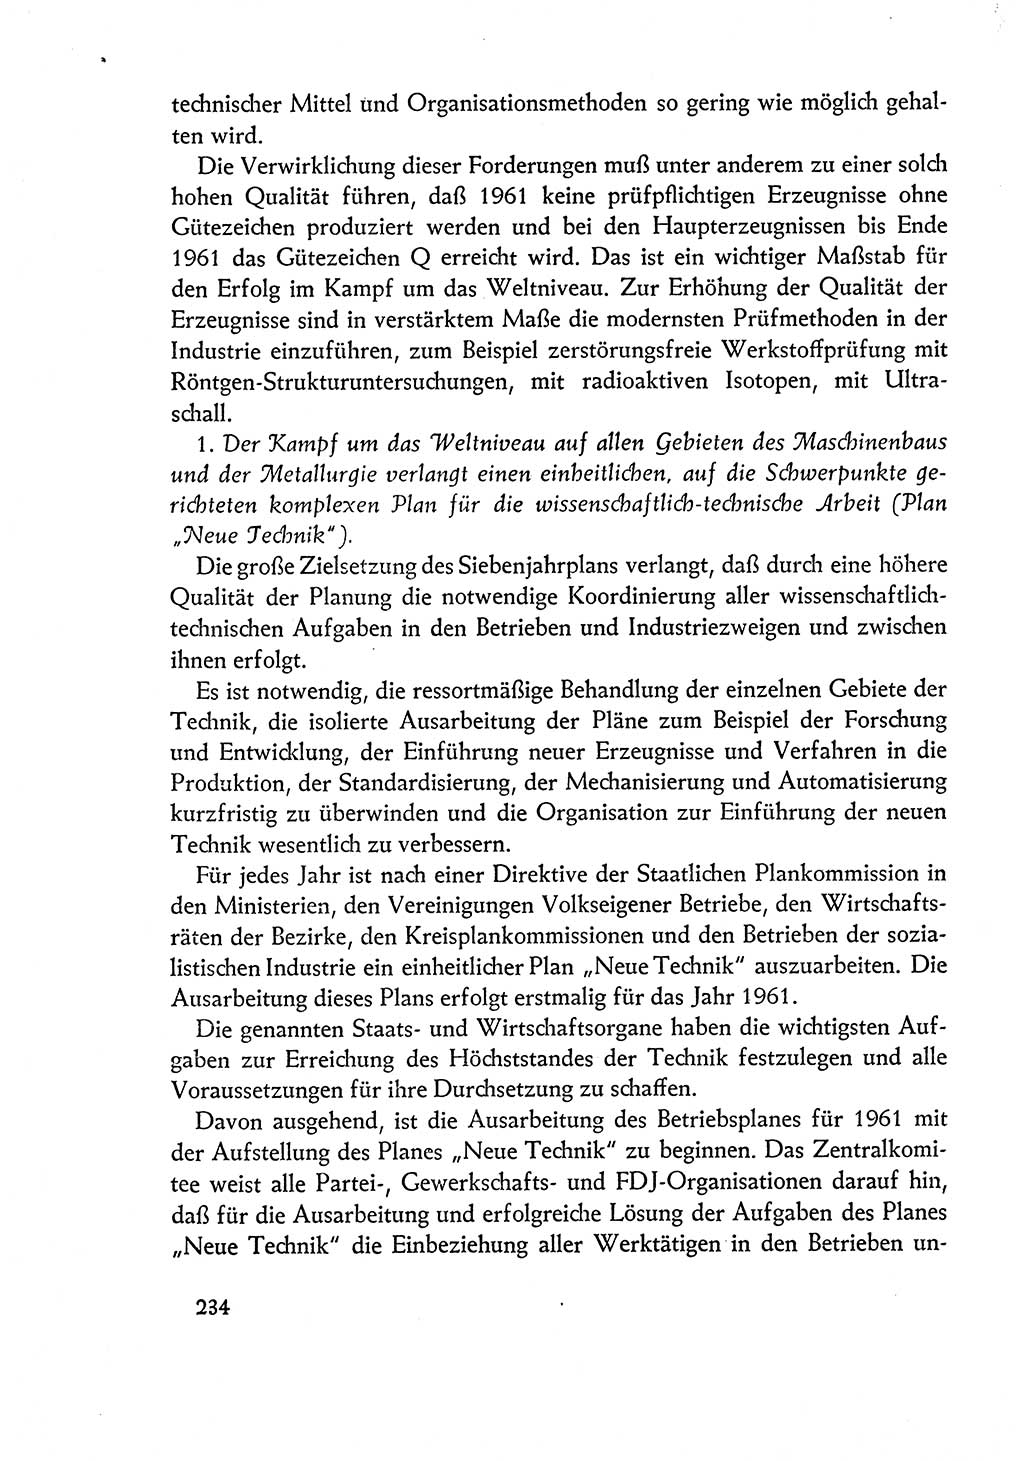 Dokumente der Sozialistischen Einheitspartei Deutschlands (SED) [Deutsche Demokratische Republik (DDR)] 1960-1961, Seite 234 (Dok. SED DDR 1960-1961, S. 234)